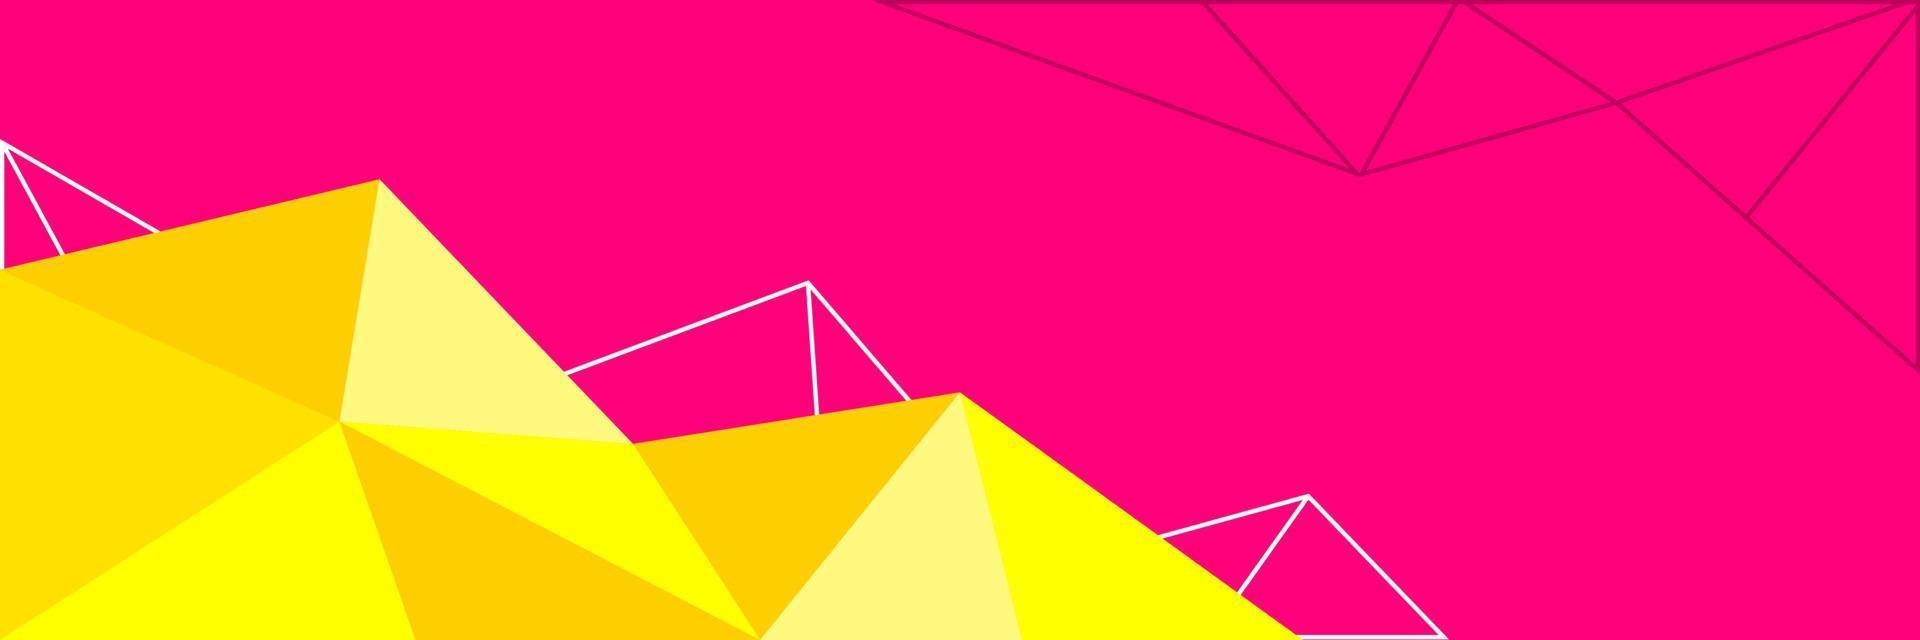 abstrato poligonal geométrico com combinação de cores frescas da moda de triângulos, banner de baixo poli horizontal com sapce de cópia para colocar texto ou objeto vetor